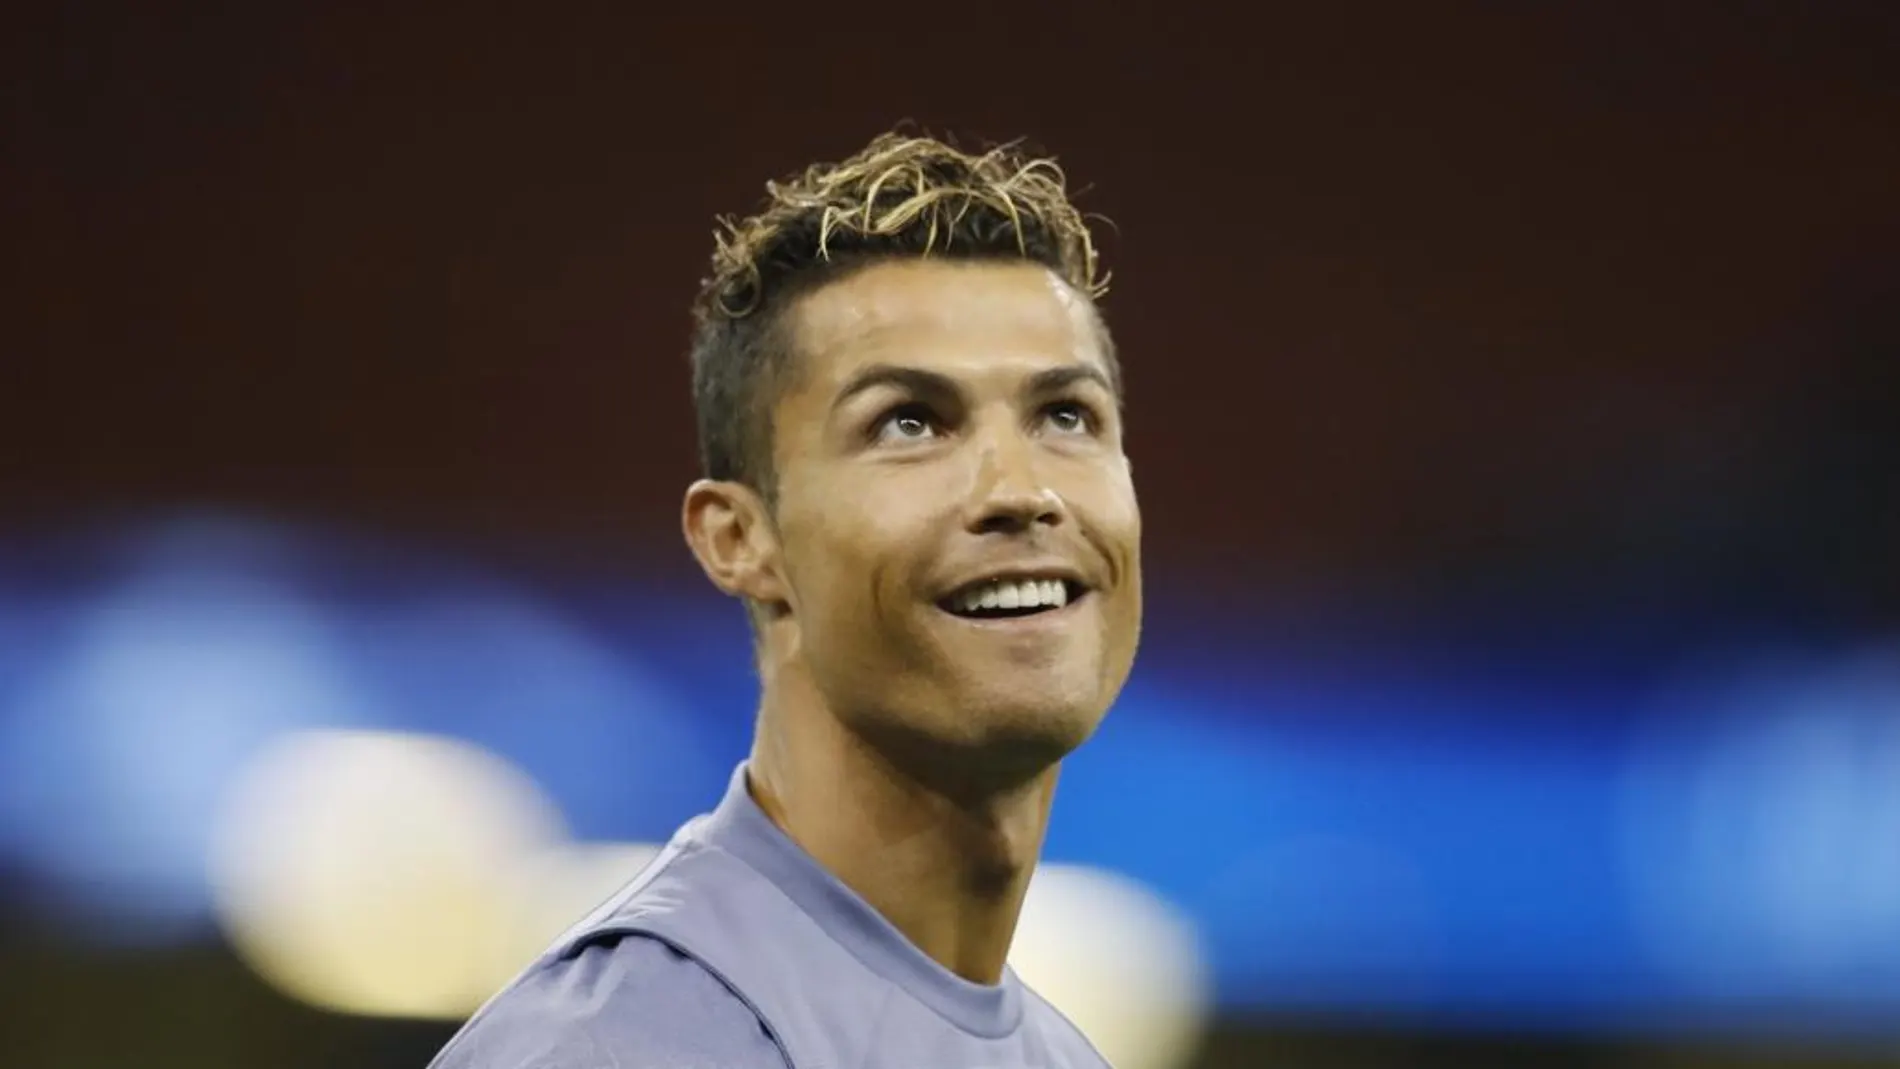 El portugués Cristiano Ronaldo